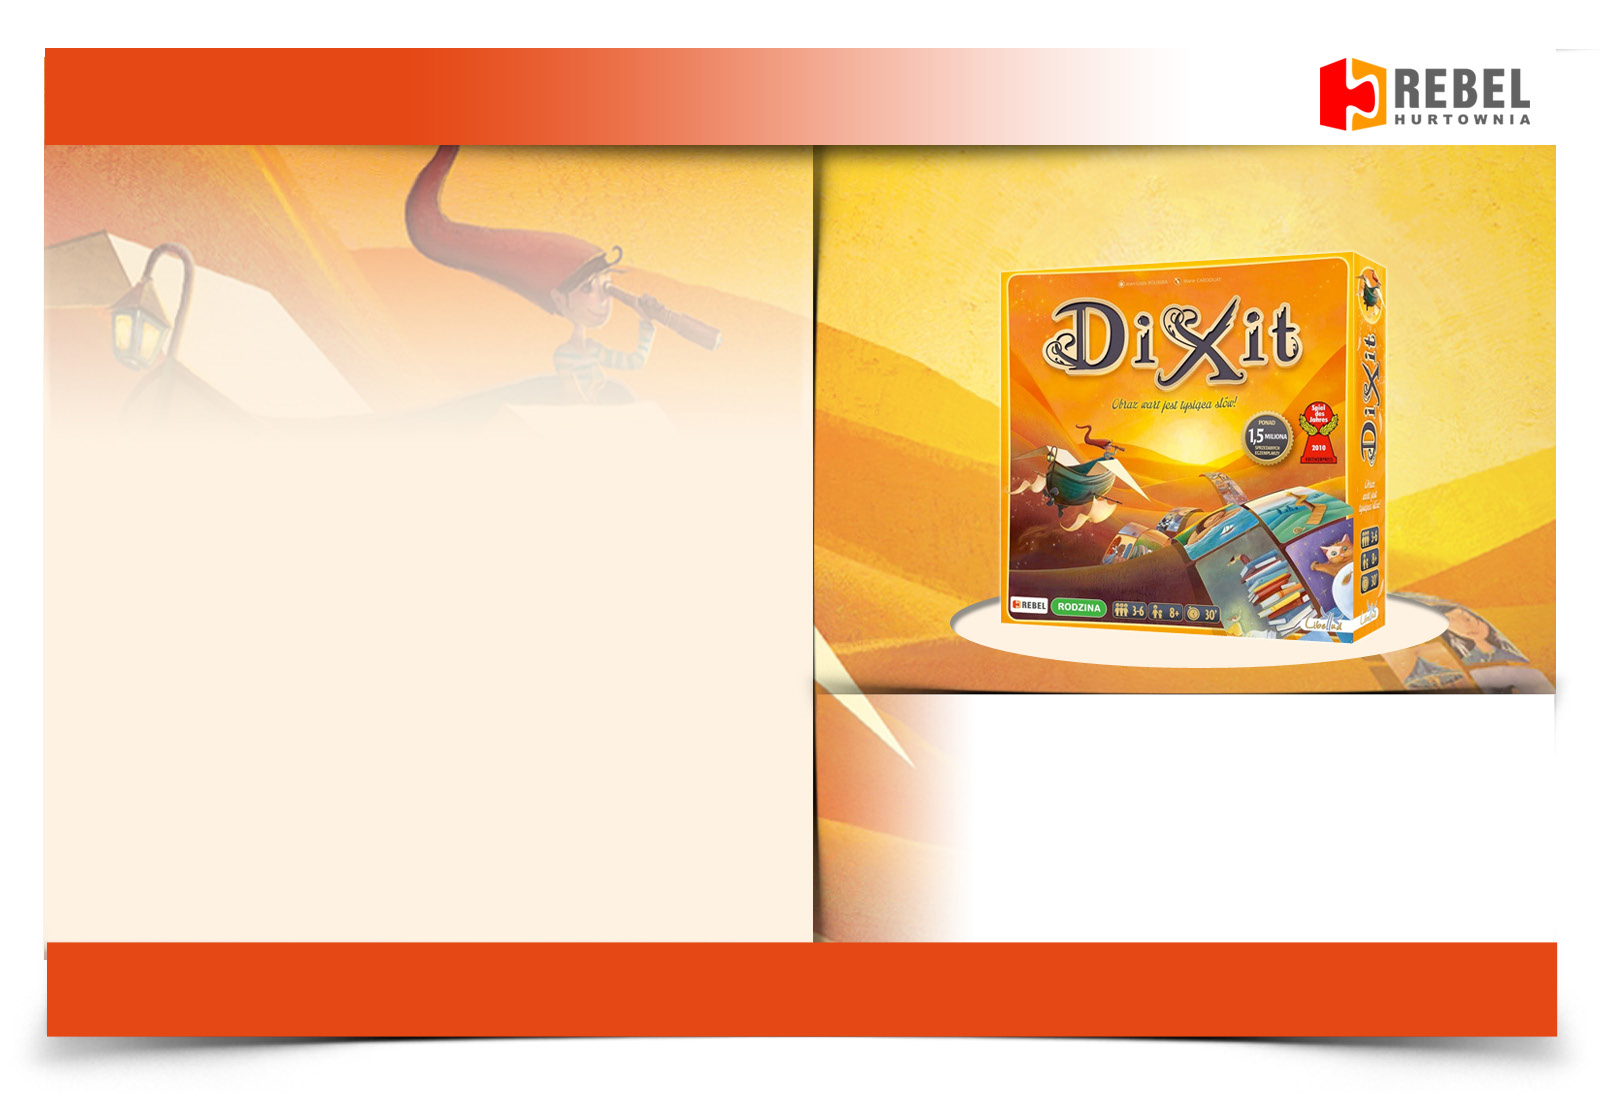 Kampania reklamowa gry Dixit film 30-sekundowy reklamujący